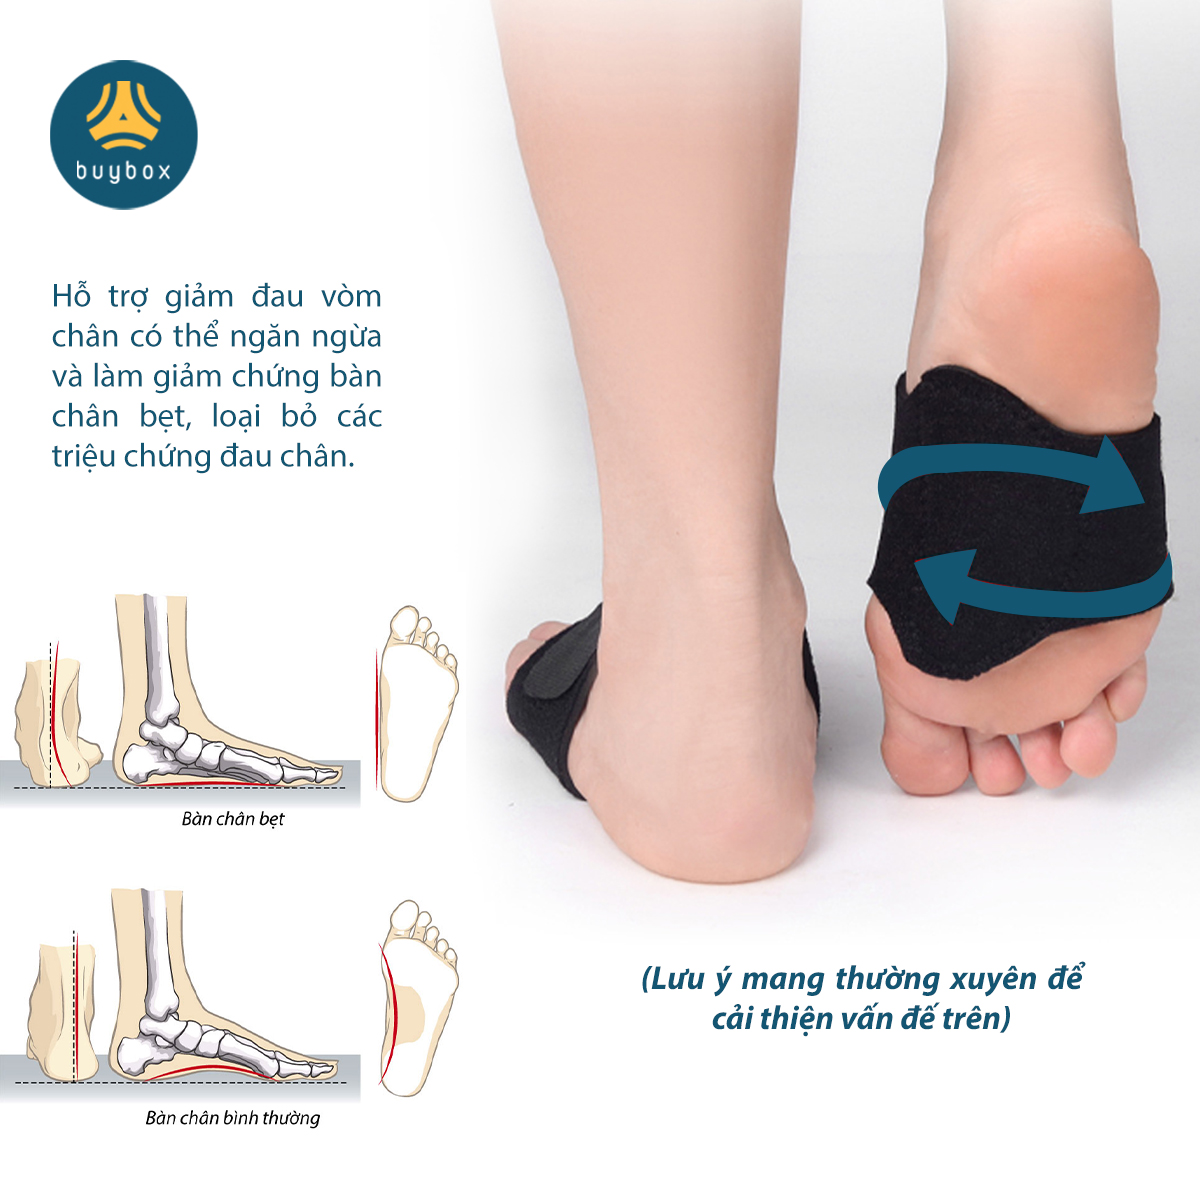 Vớ đệm lõm bàn chân giảm mỏi chân khi đi đứng quá lâu,  bảo vệ đôi chân của bạn - Buybox - BBPK289